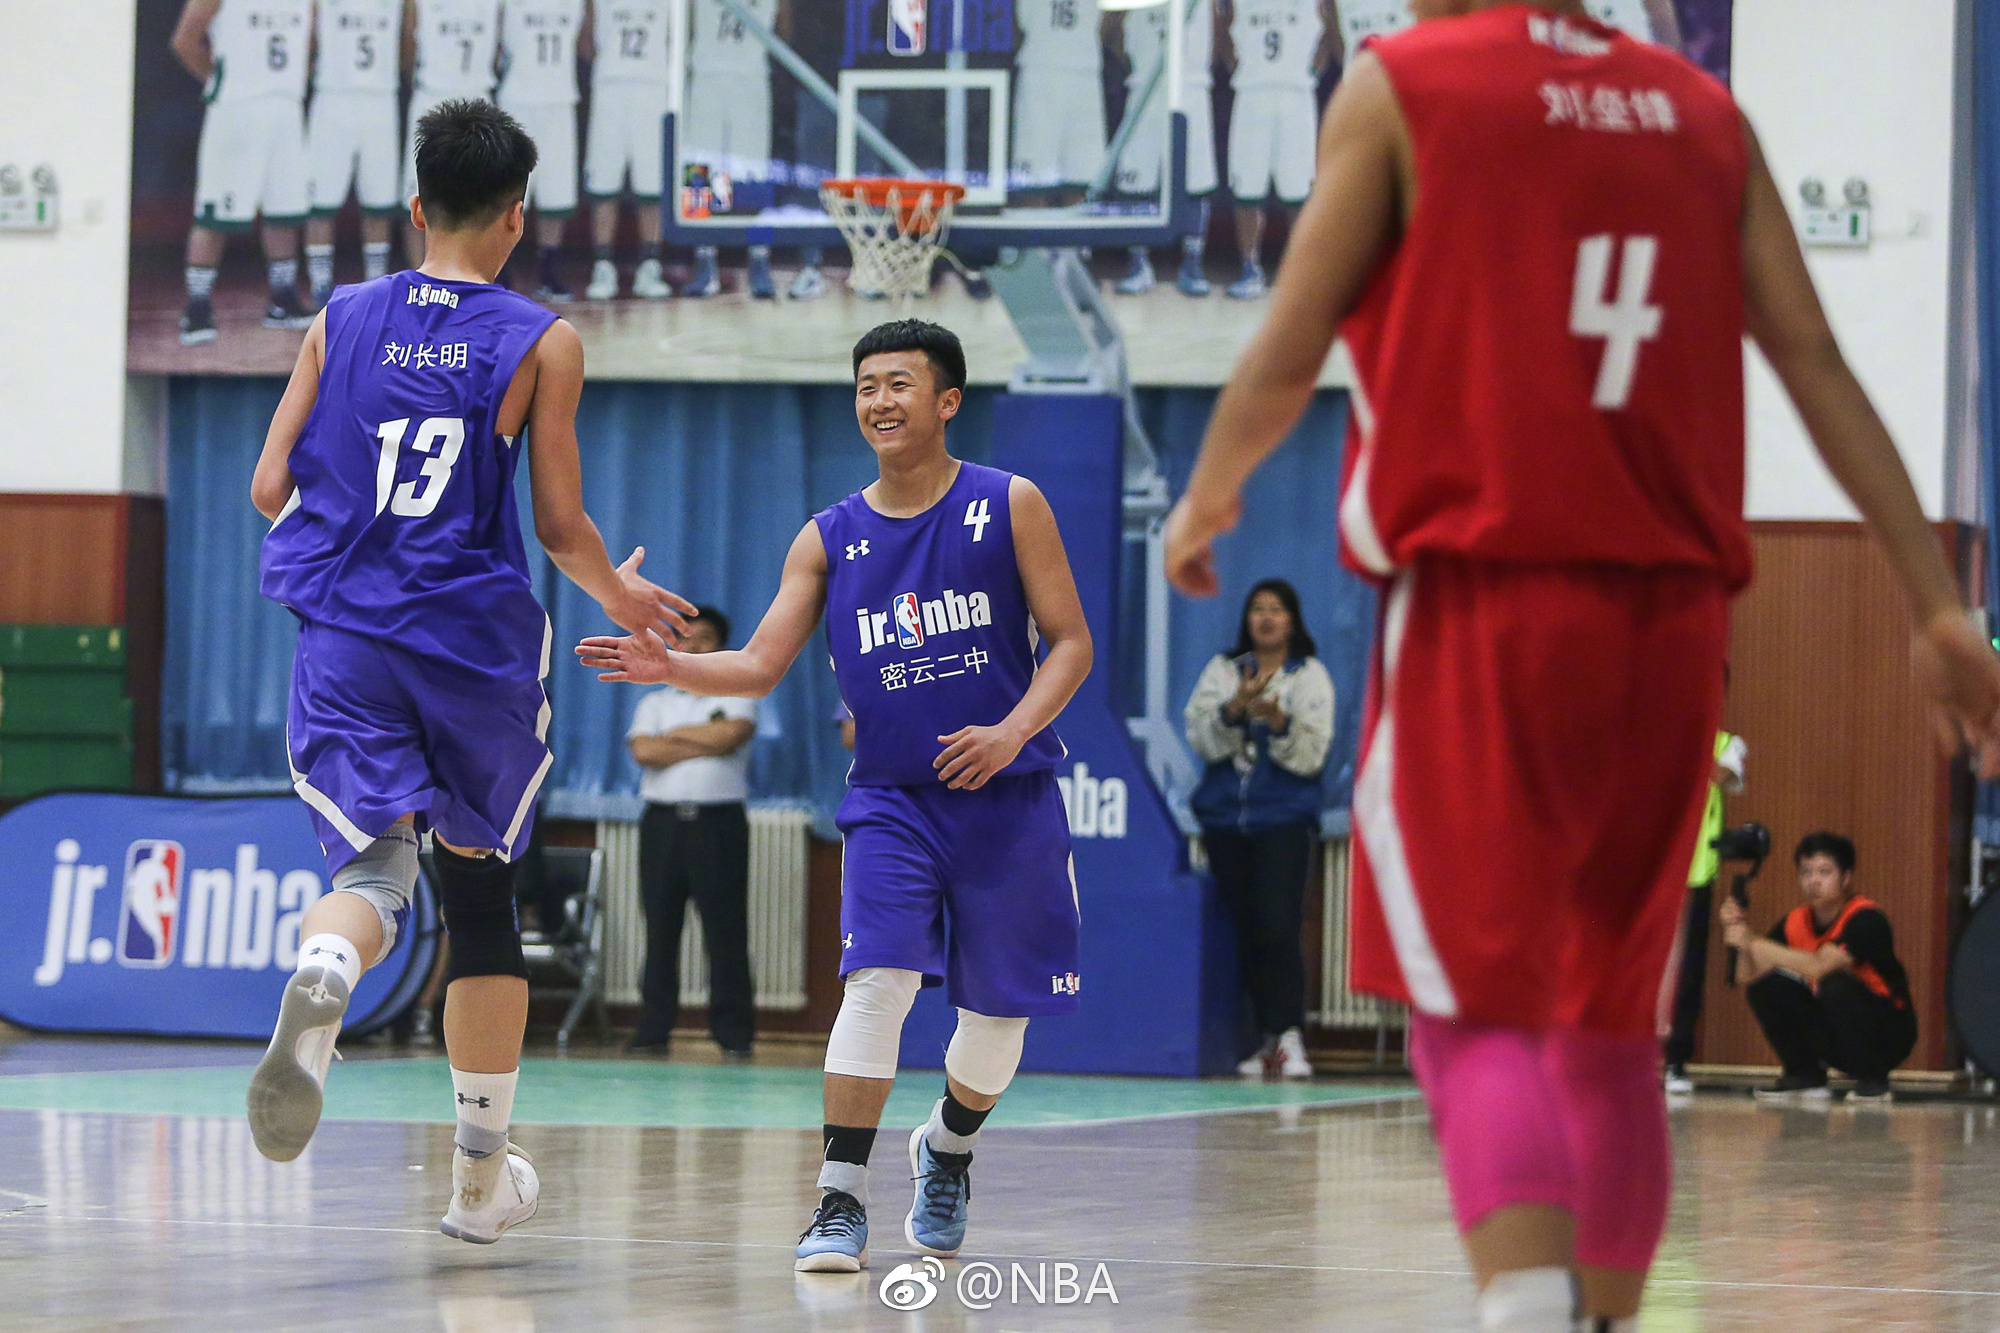 2018 Jr. NBA校园篮球联赛北京站高中组,展开